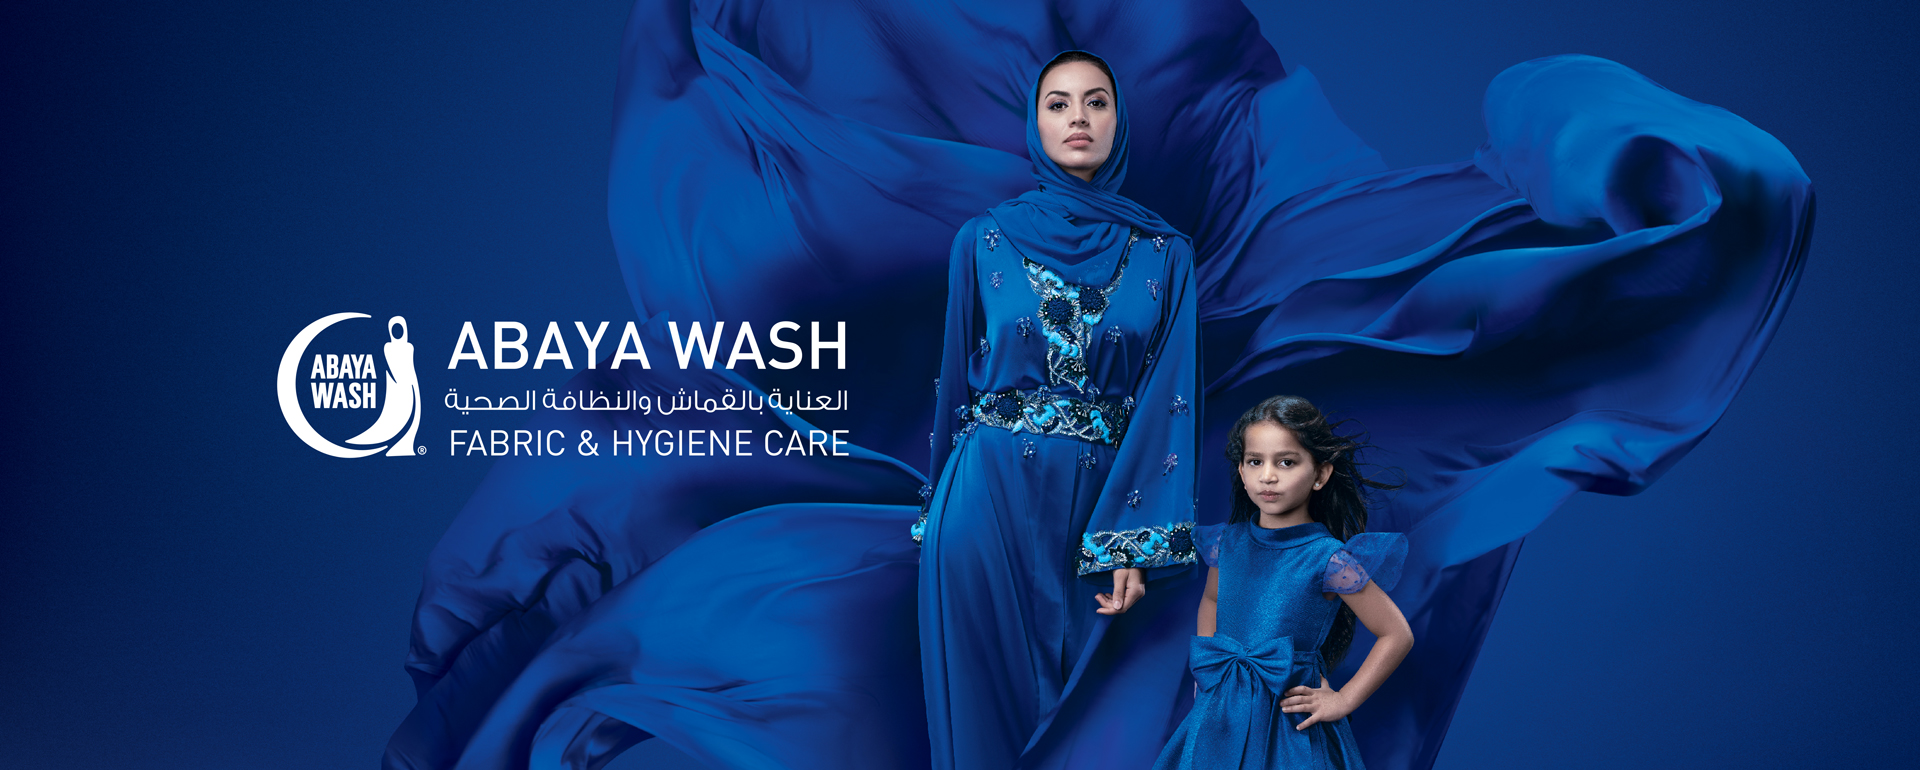 ABAYA WASH - Fabric and Hygiene Care